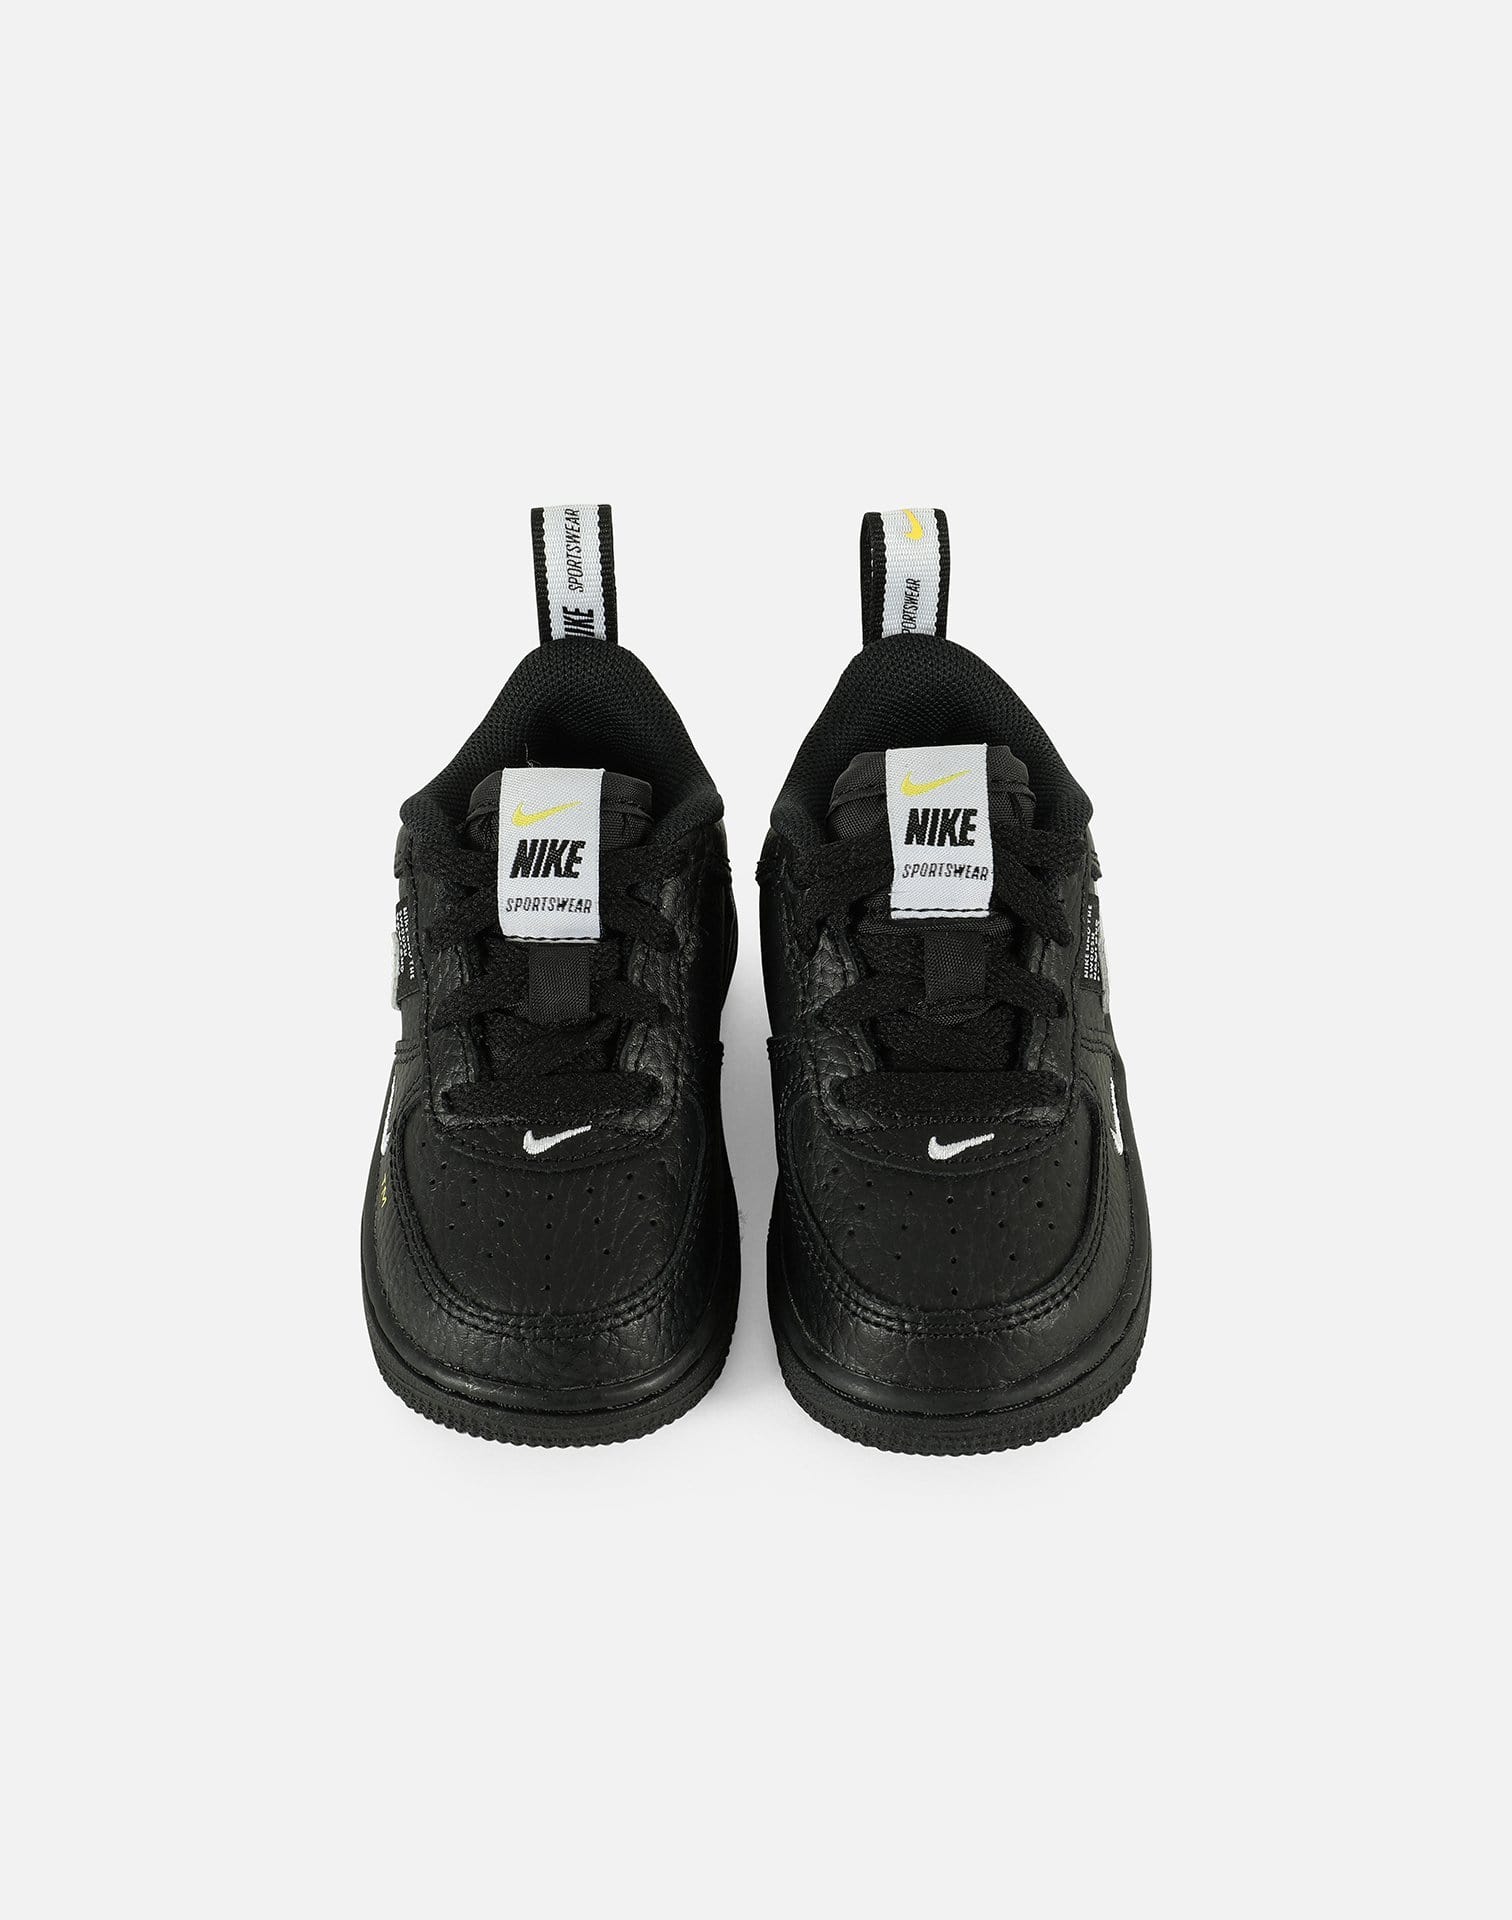 Nike Air Force 1 Low LV8 Utility Black White (PS) Kids' - AV4272